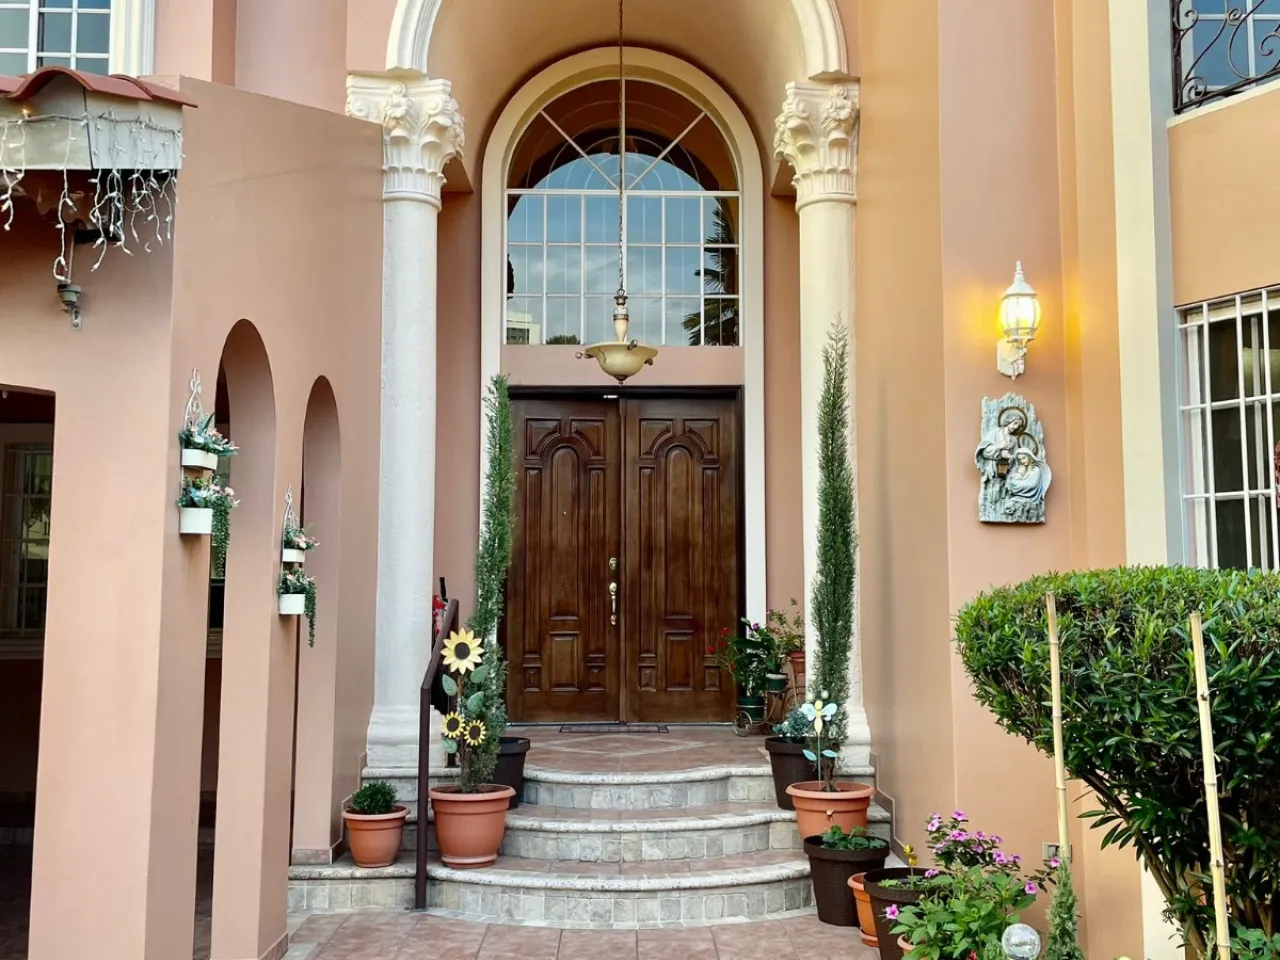 puerta principal doble, hecha de madera con 3 escalones, dos columnas a cada lado, parede de color rosa palido, decorado con diferentes plantas.